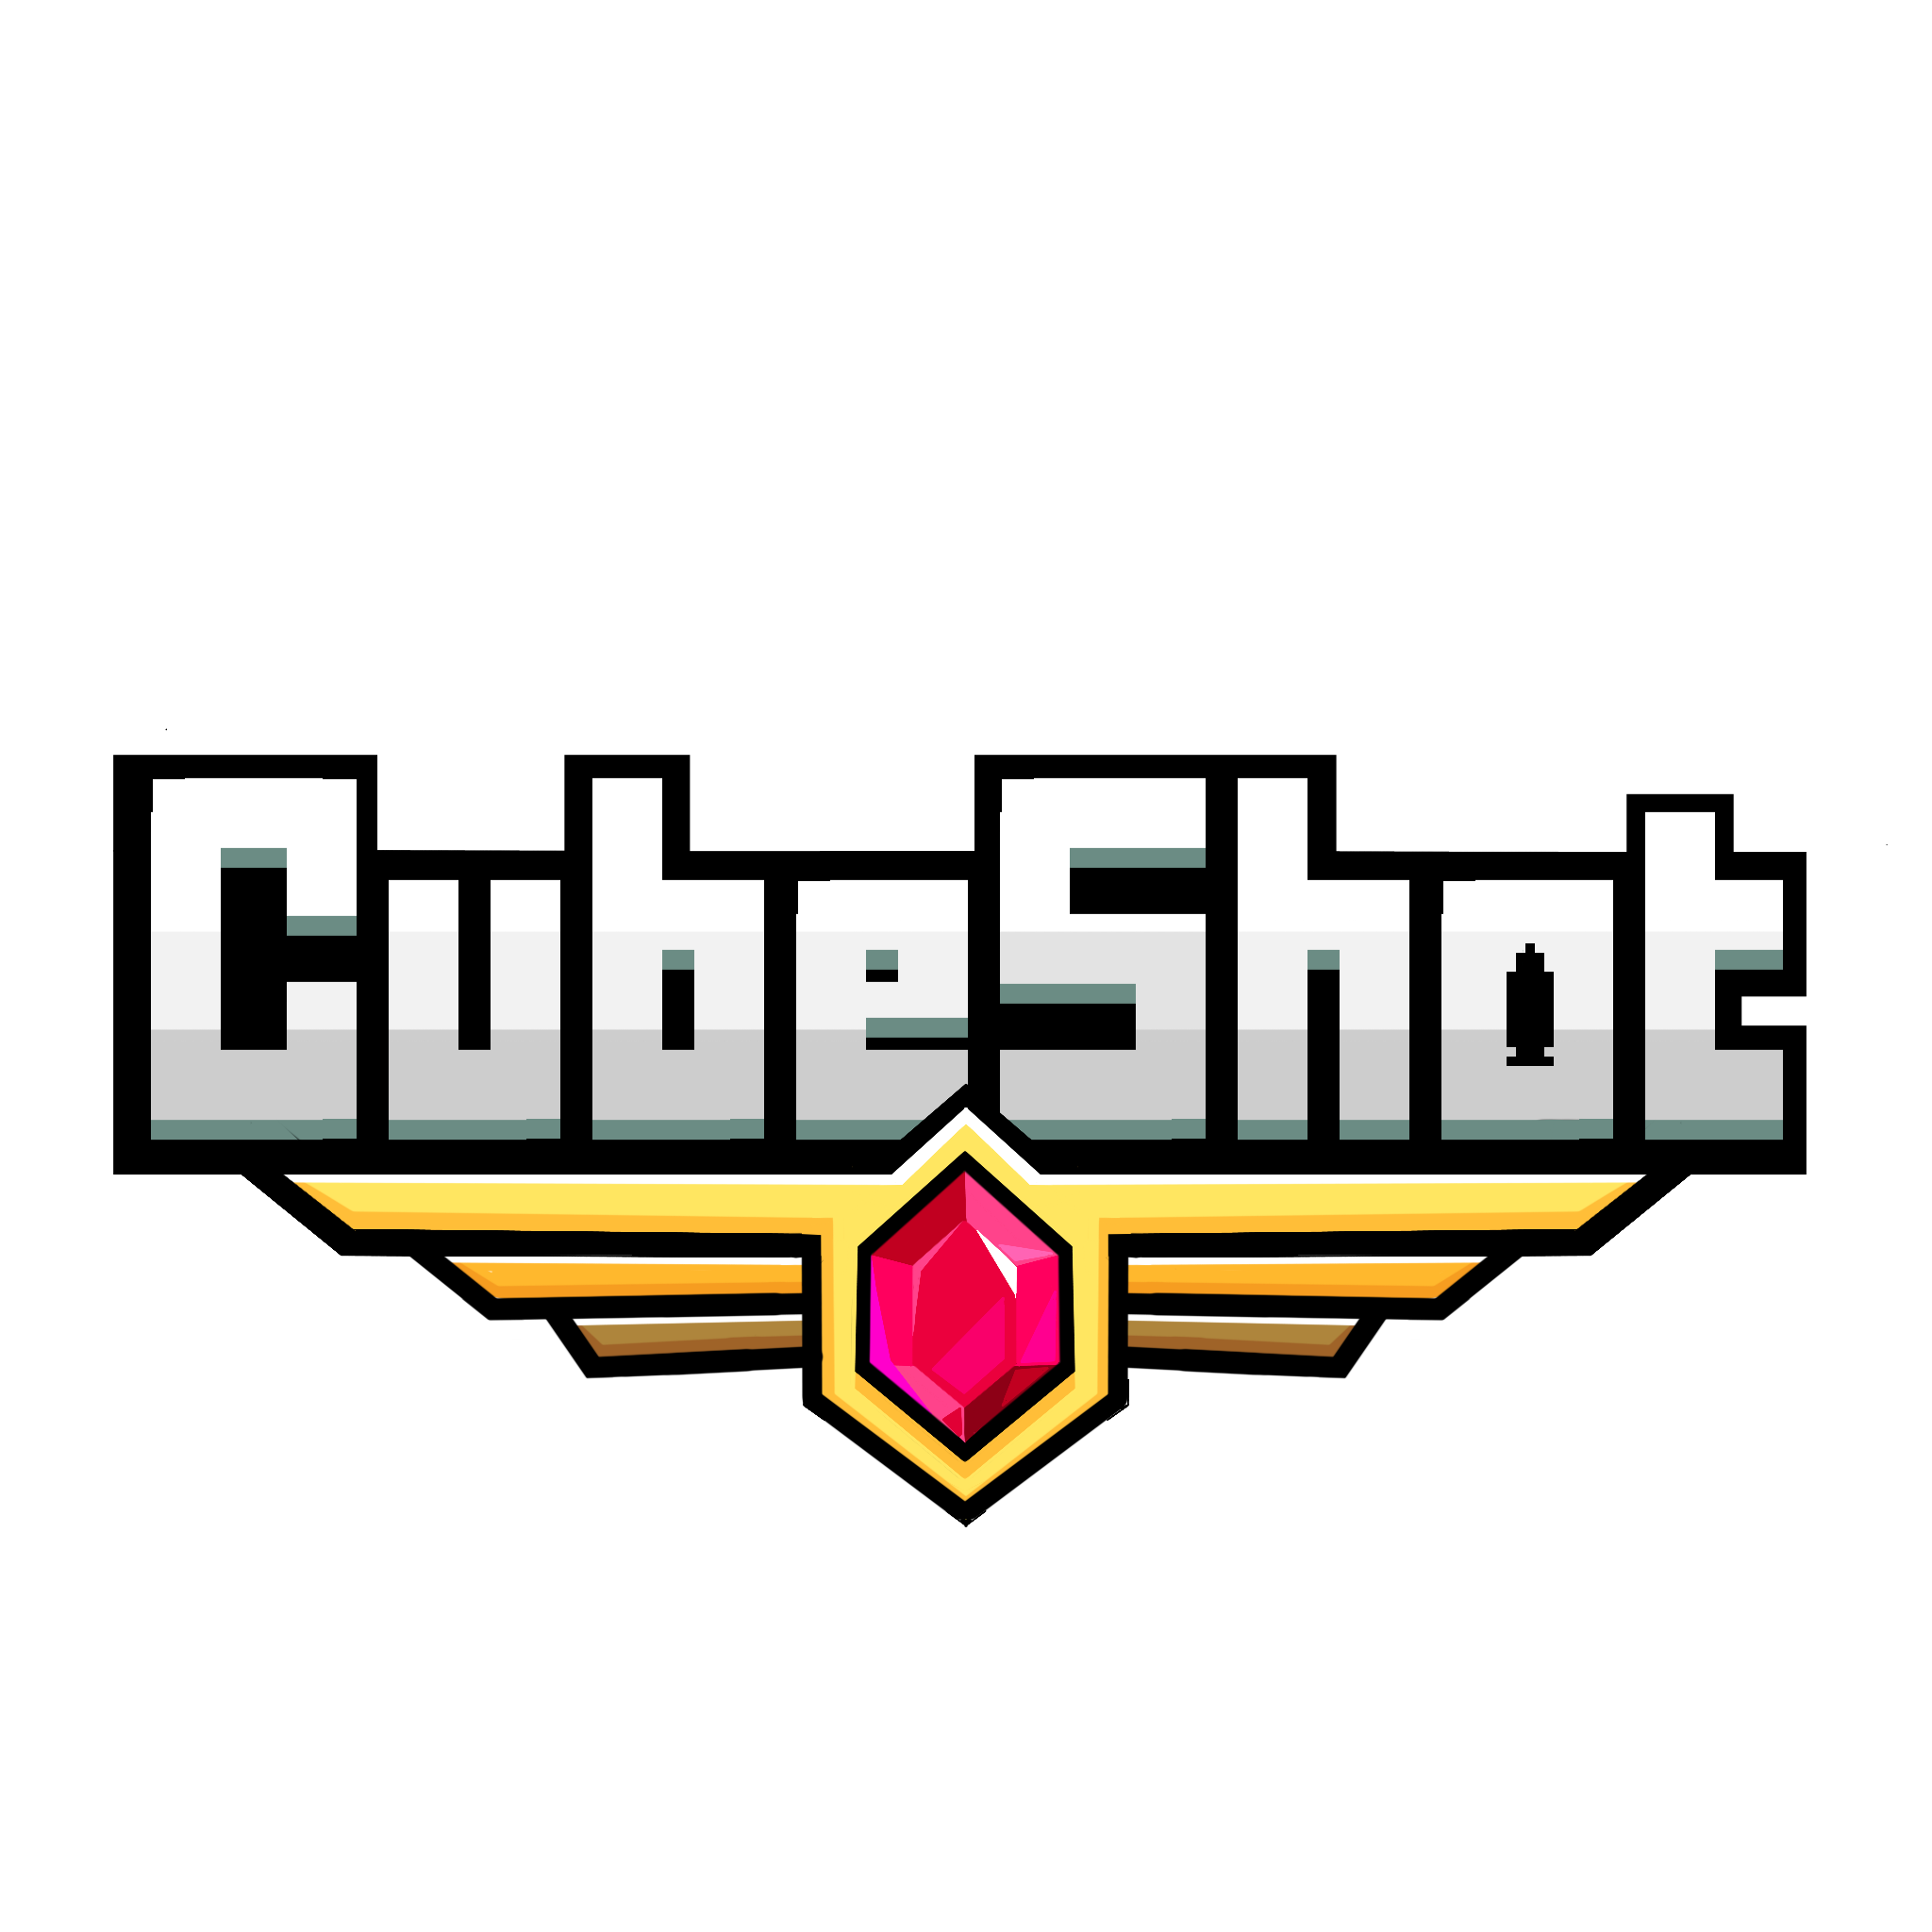 CubeShot - Browser FPS